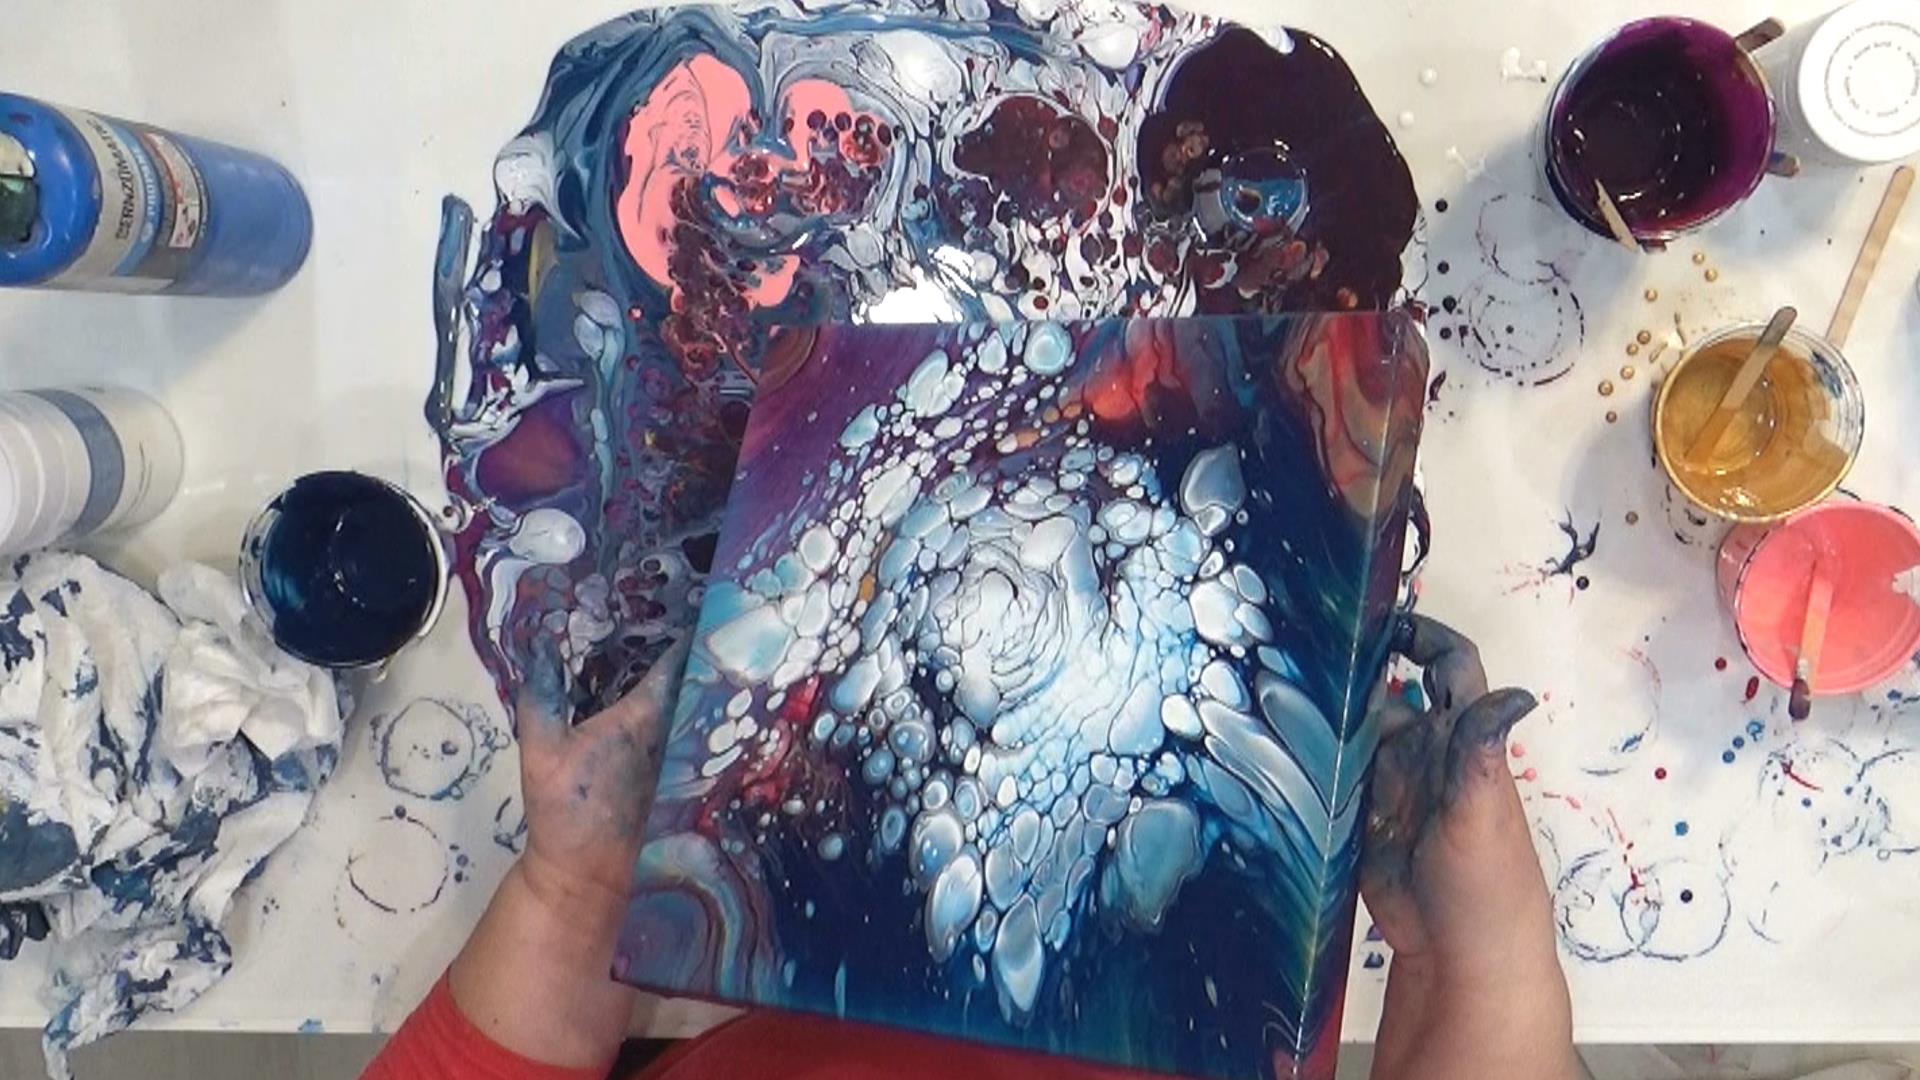 Cloud Pour - Avalanche - move paint around on canvas